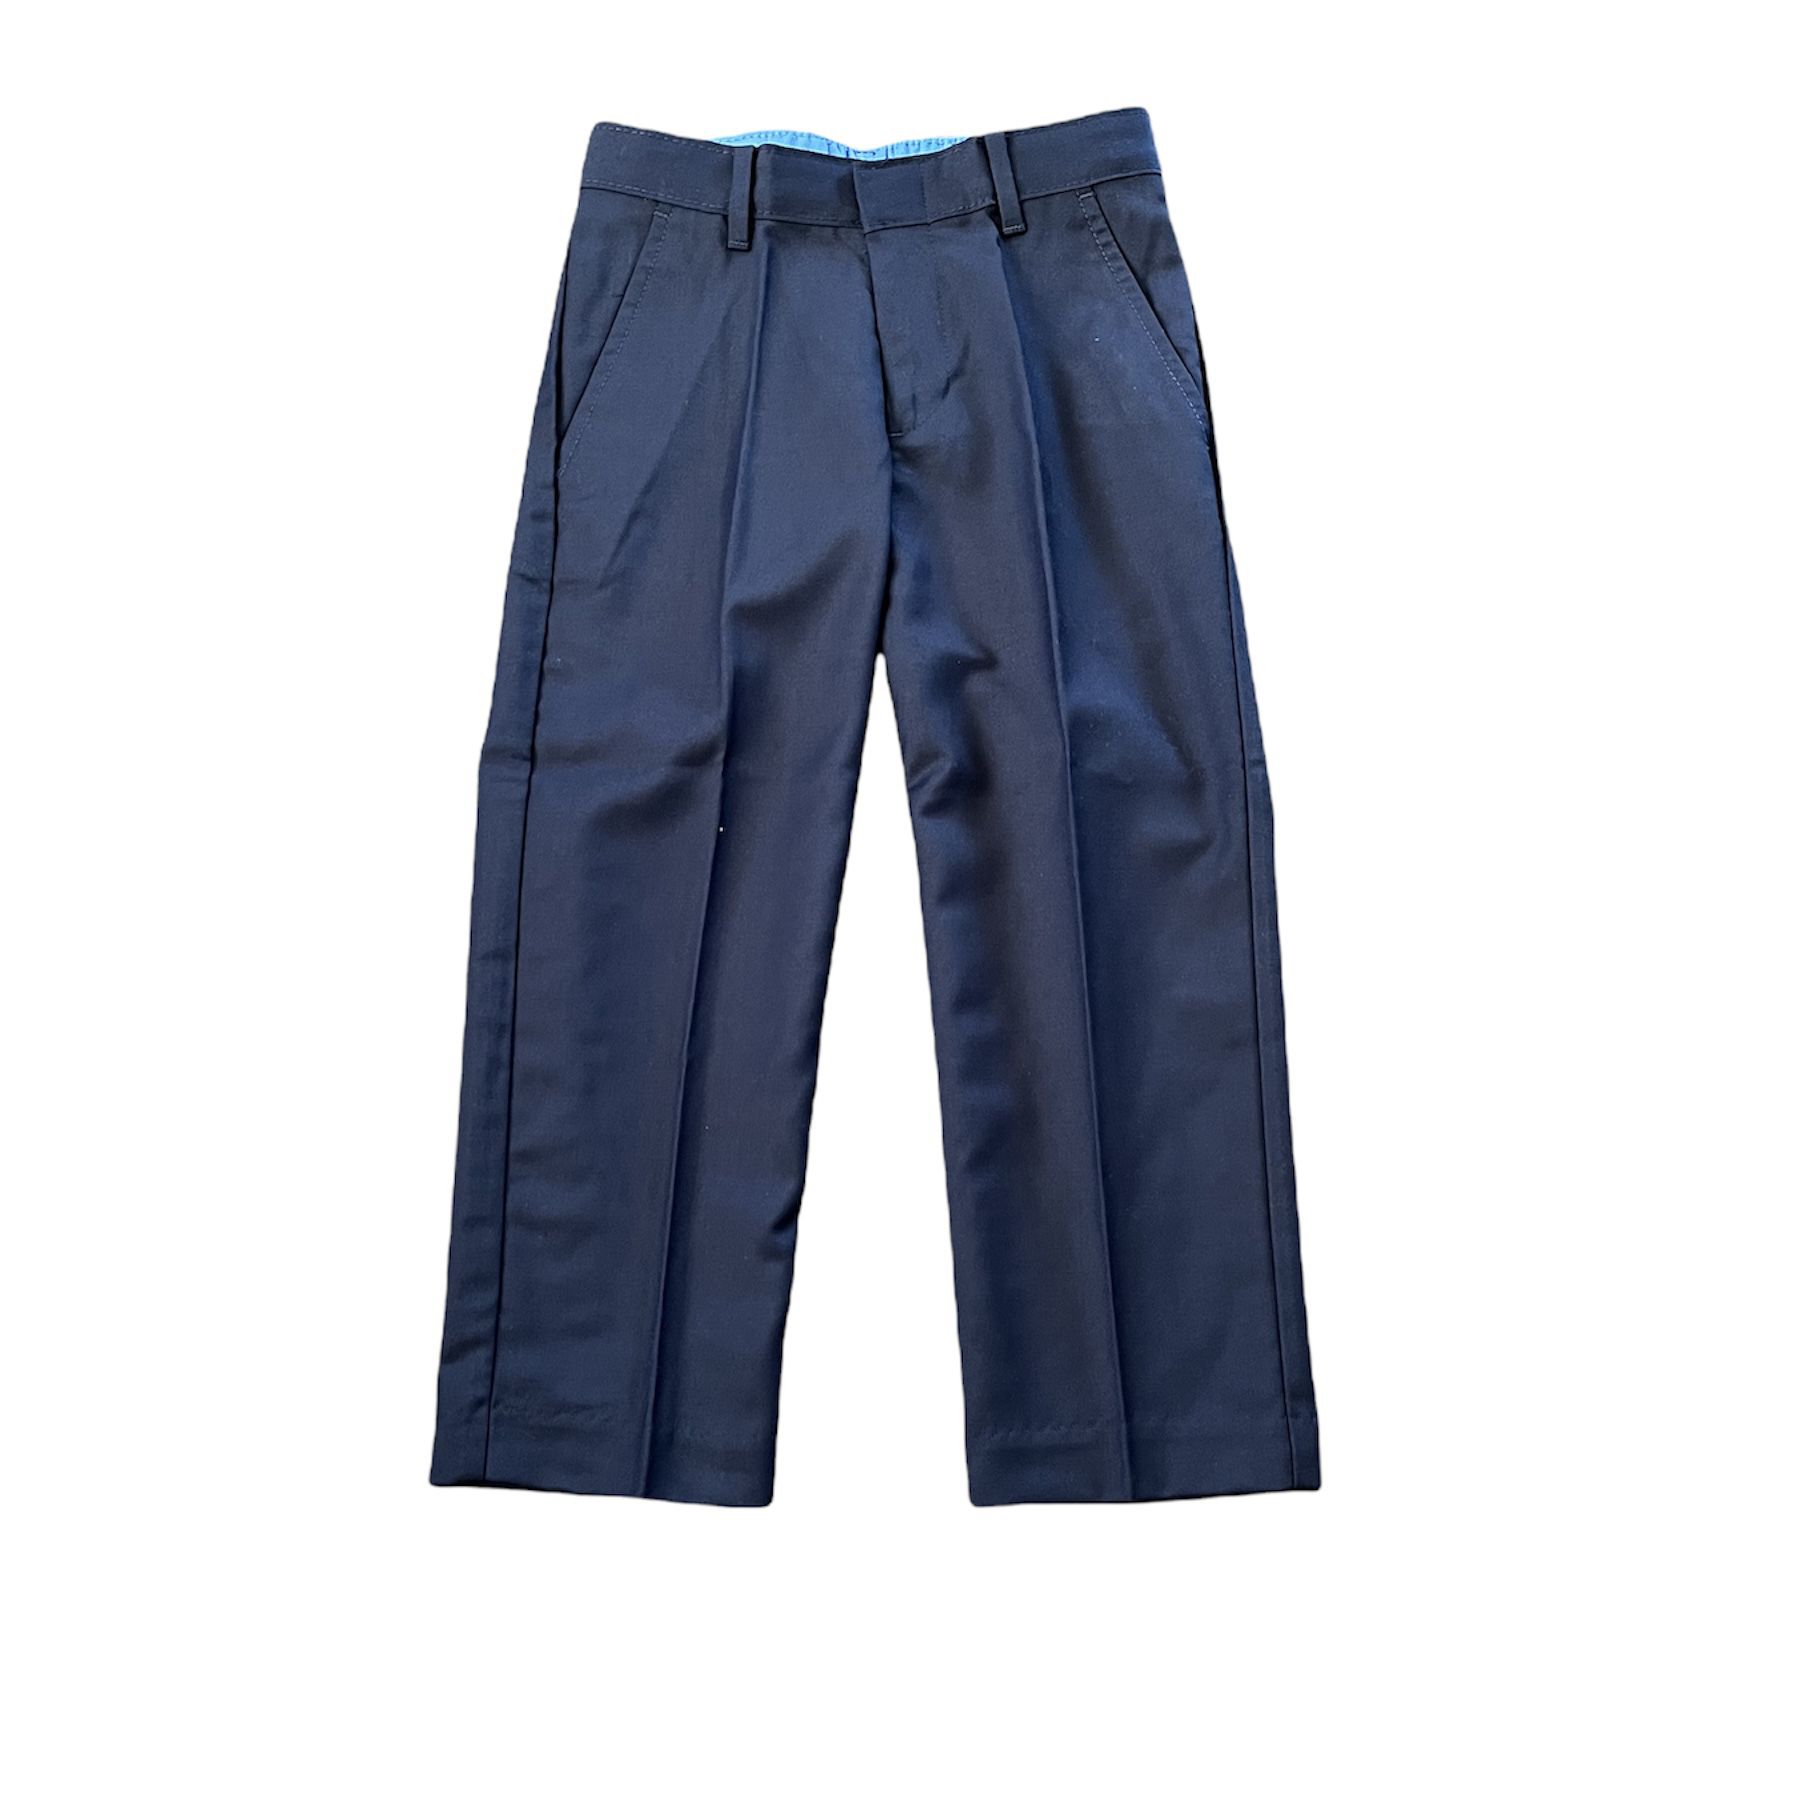 NEW Izod Boy’s School Uniform Pants size 4 Navy